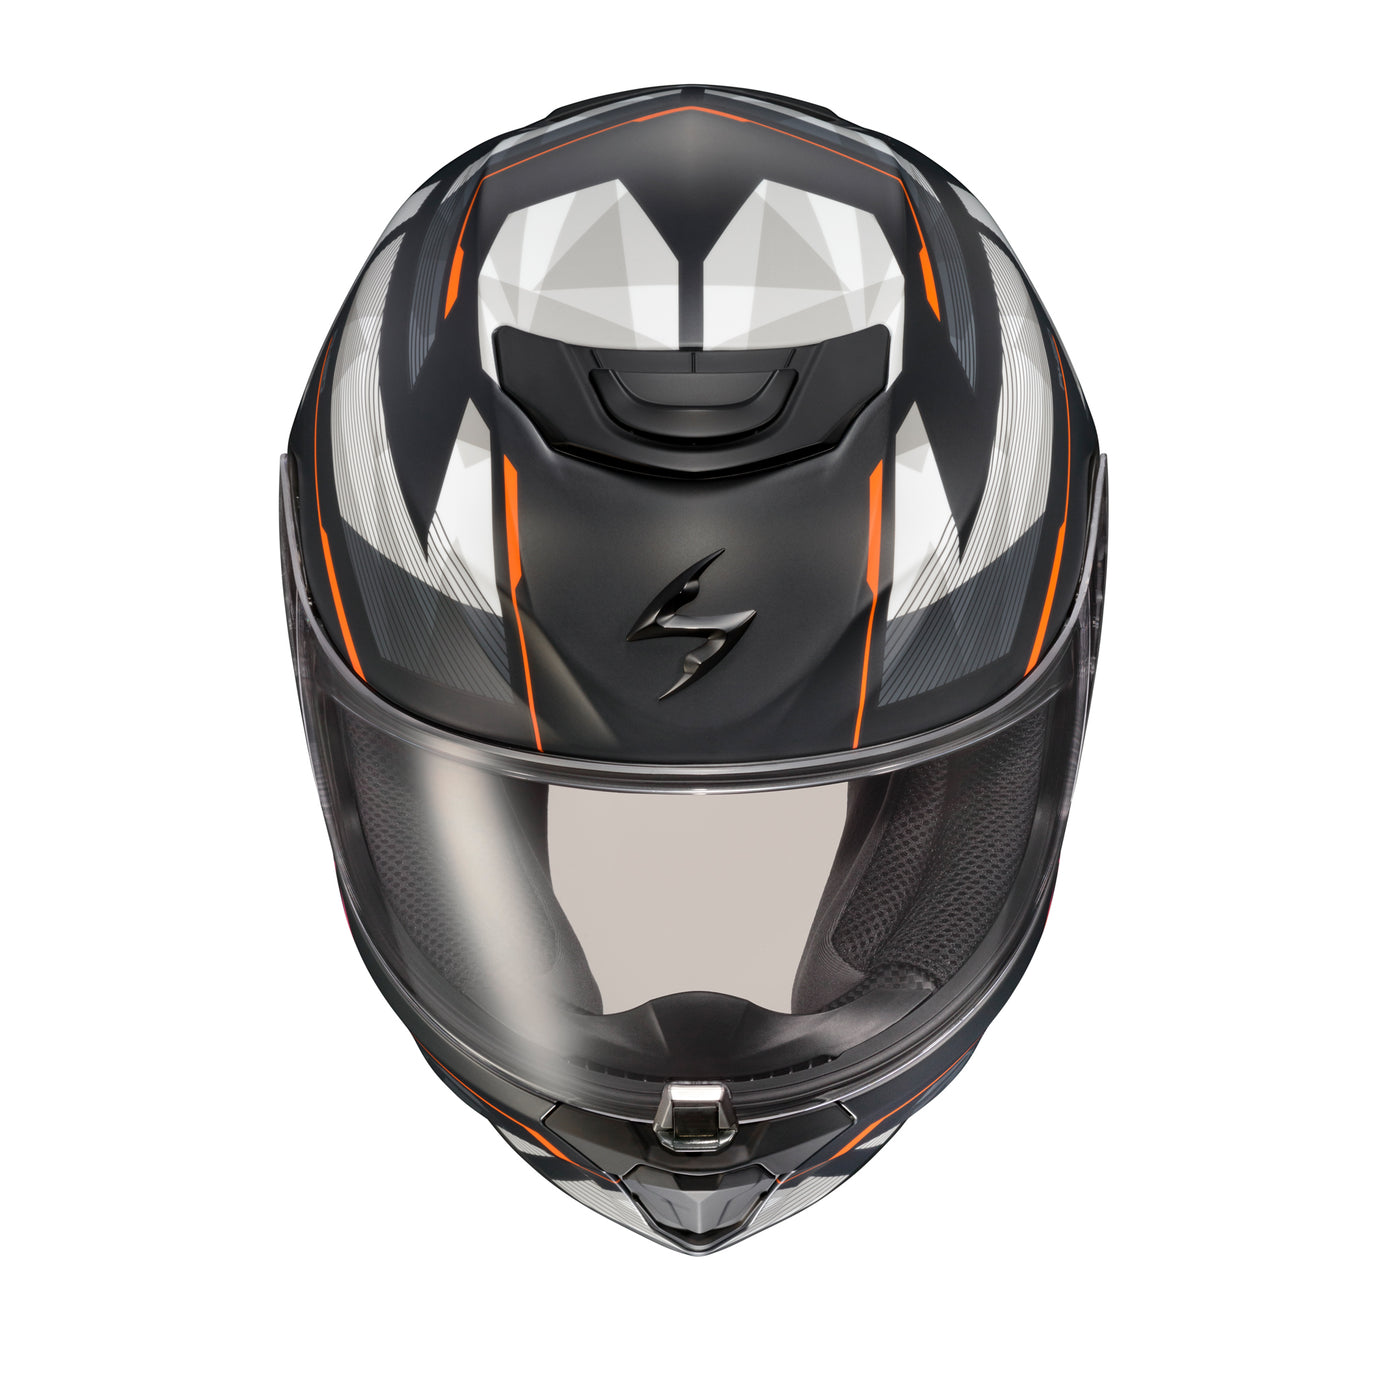 SCORPION EXO EXO-R420 Full-Face Helmet Engage